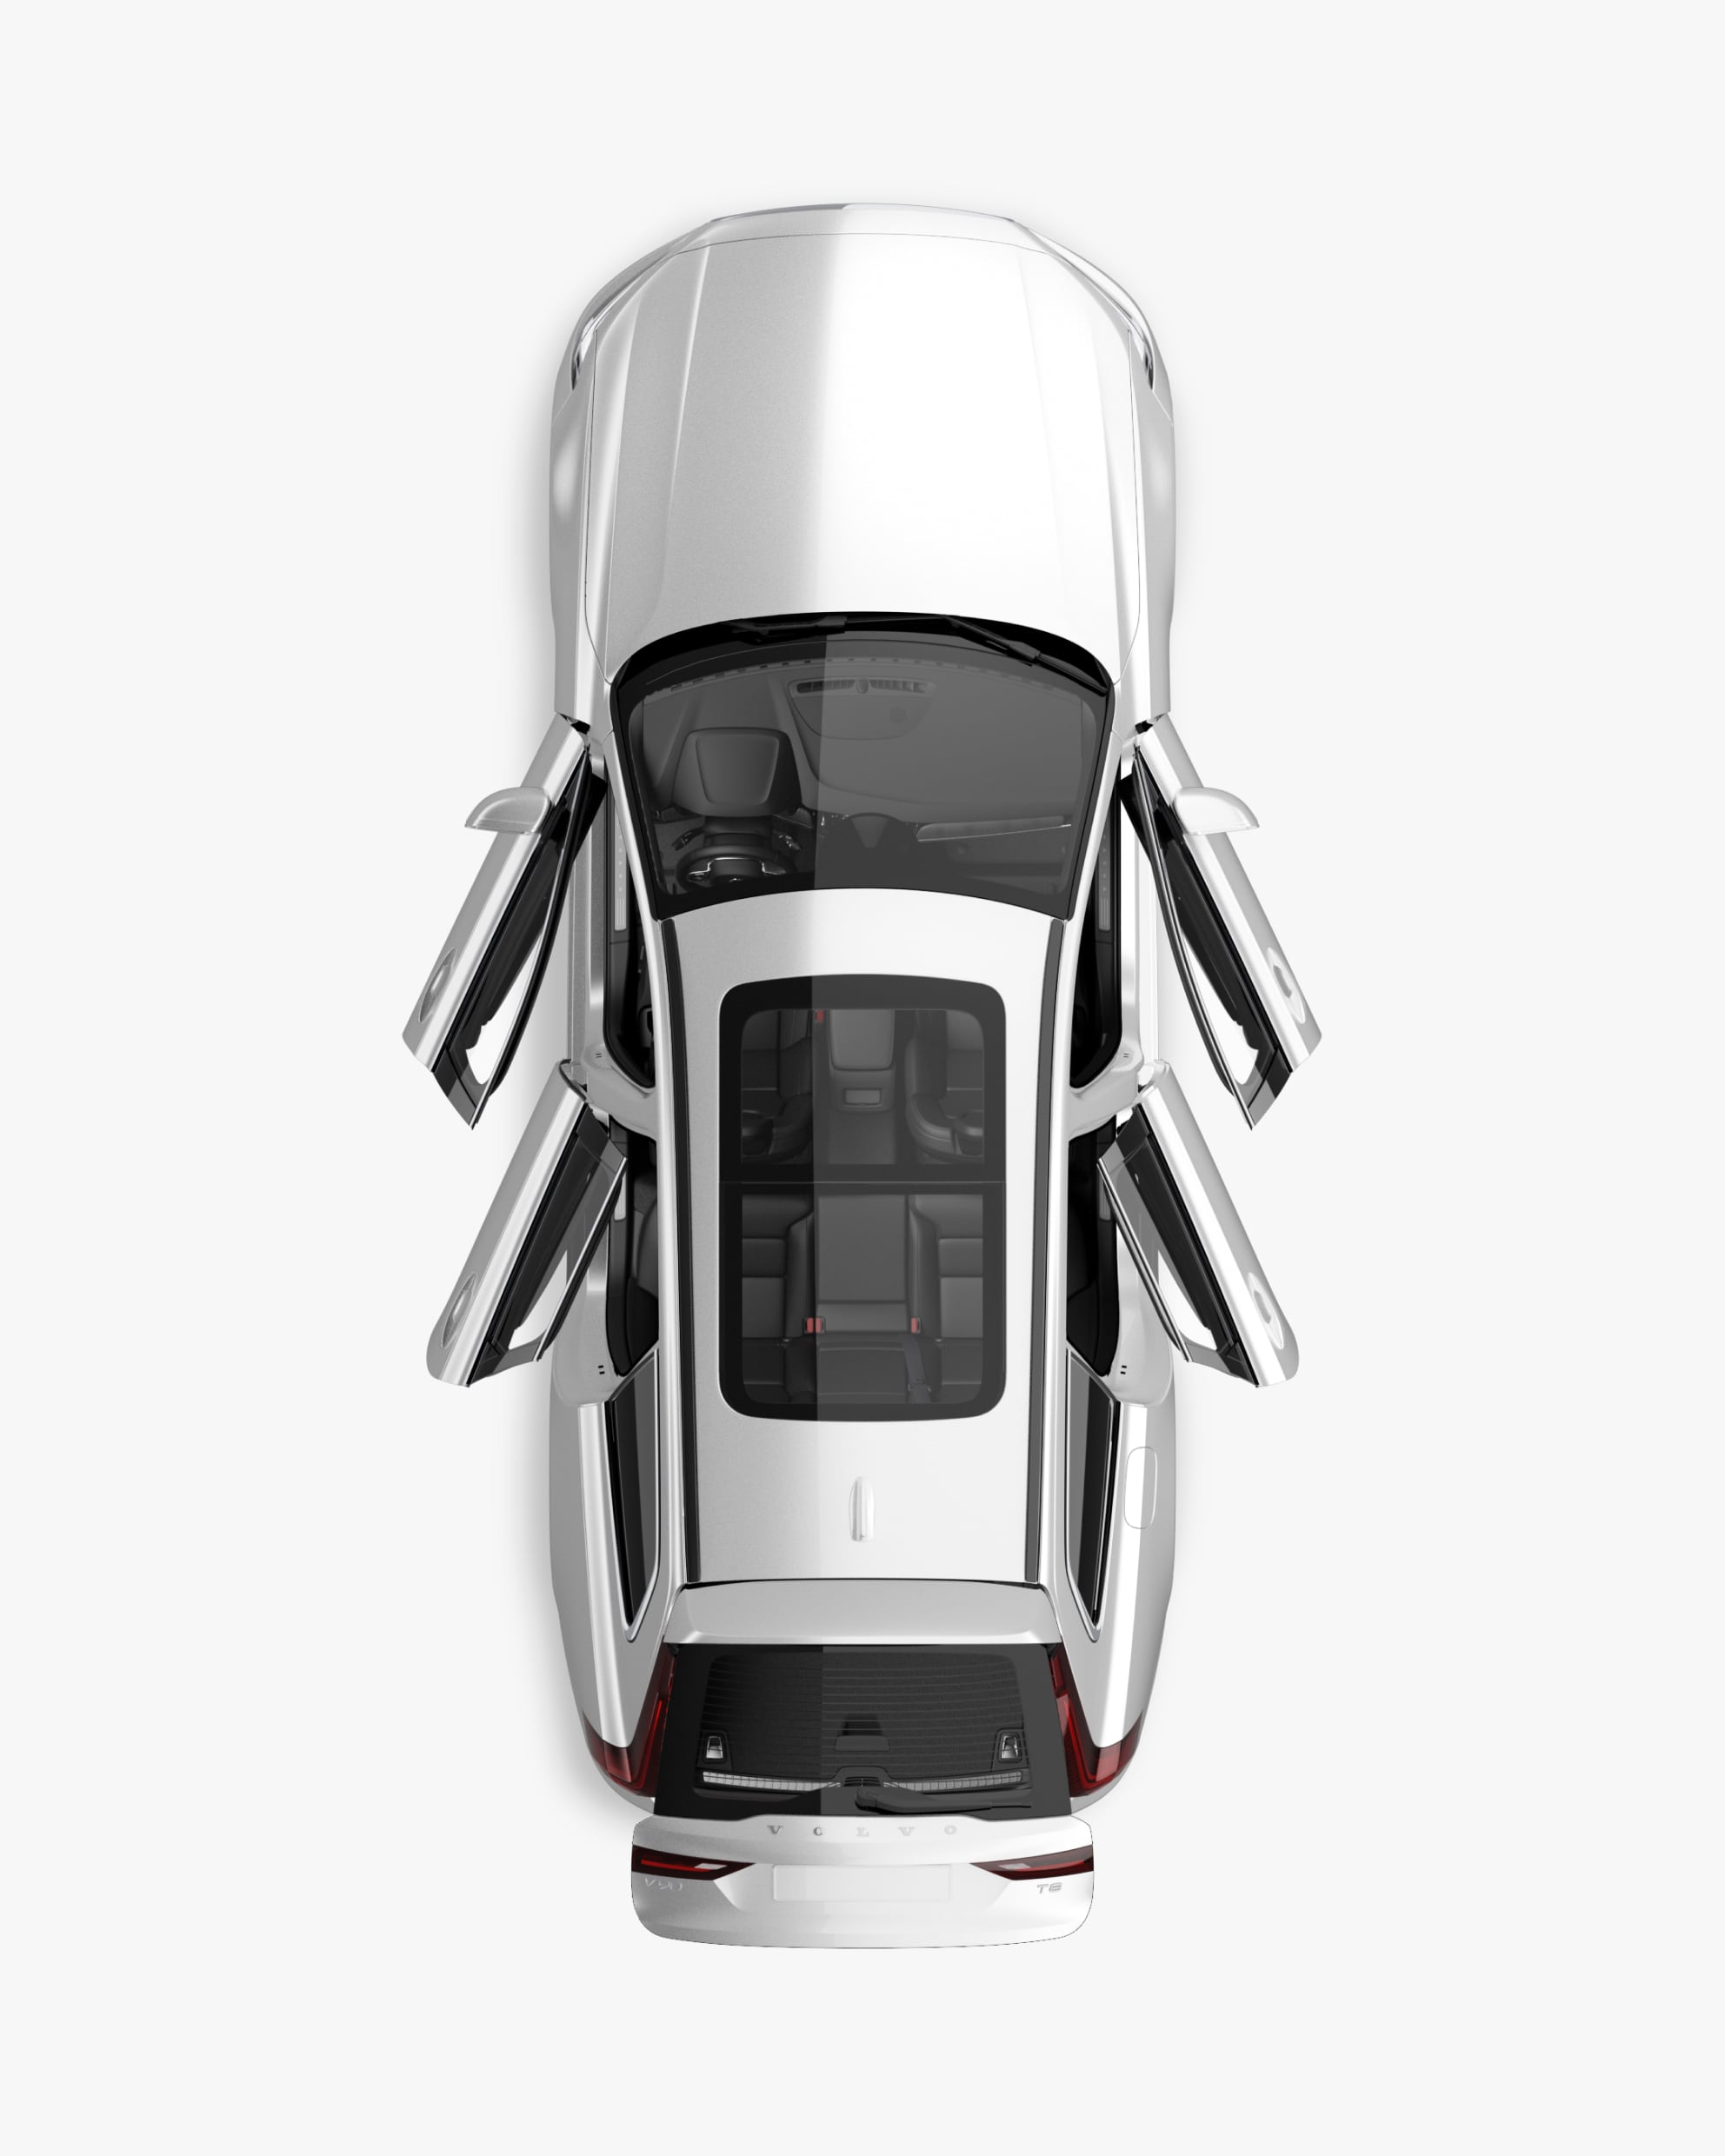 Un Volvo V90 híbrido enchufable visto directamente desde arriba con el interior visible.